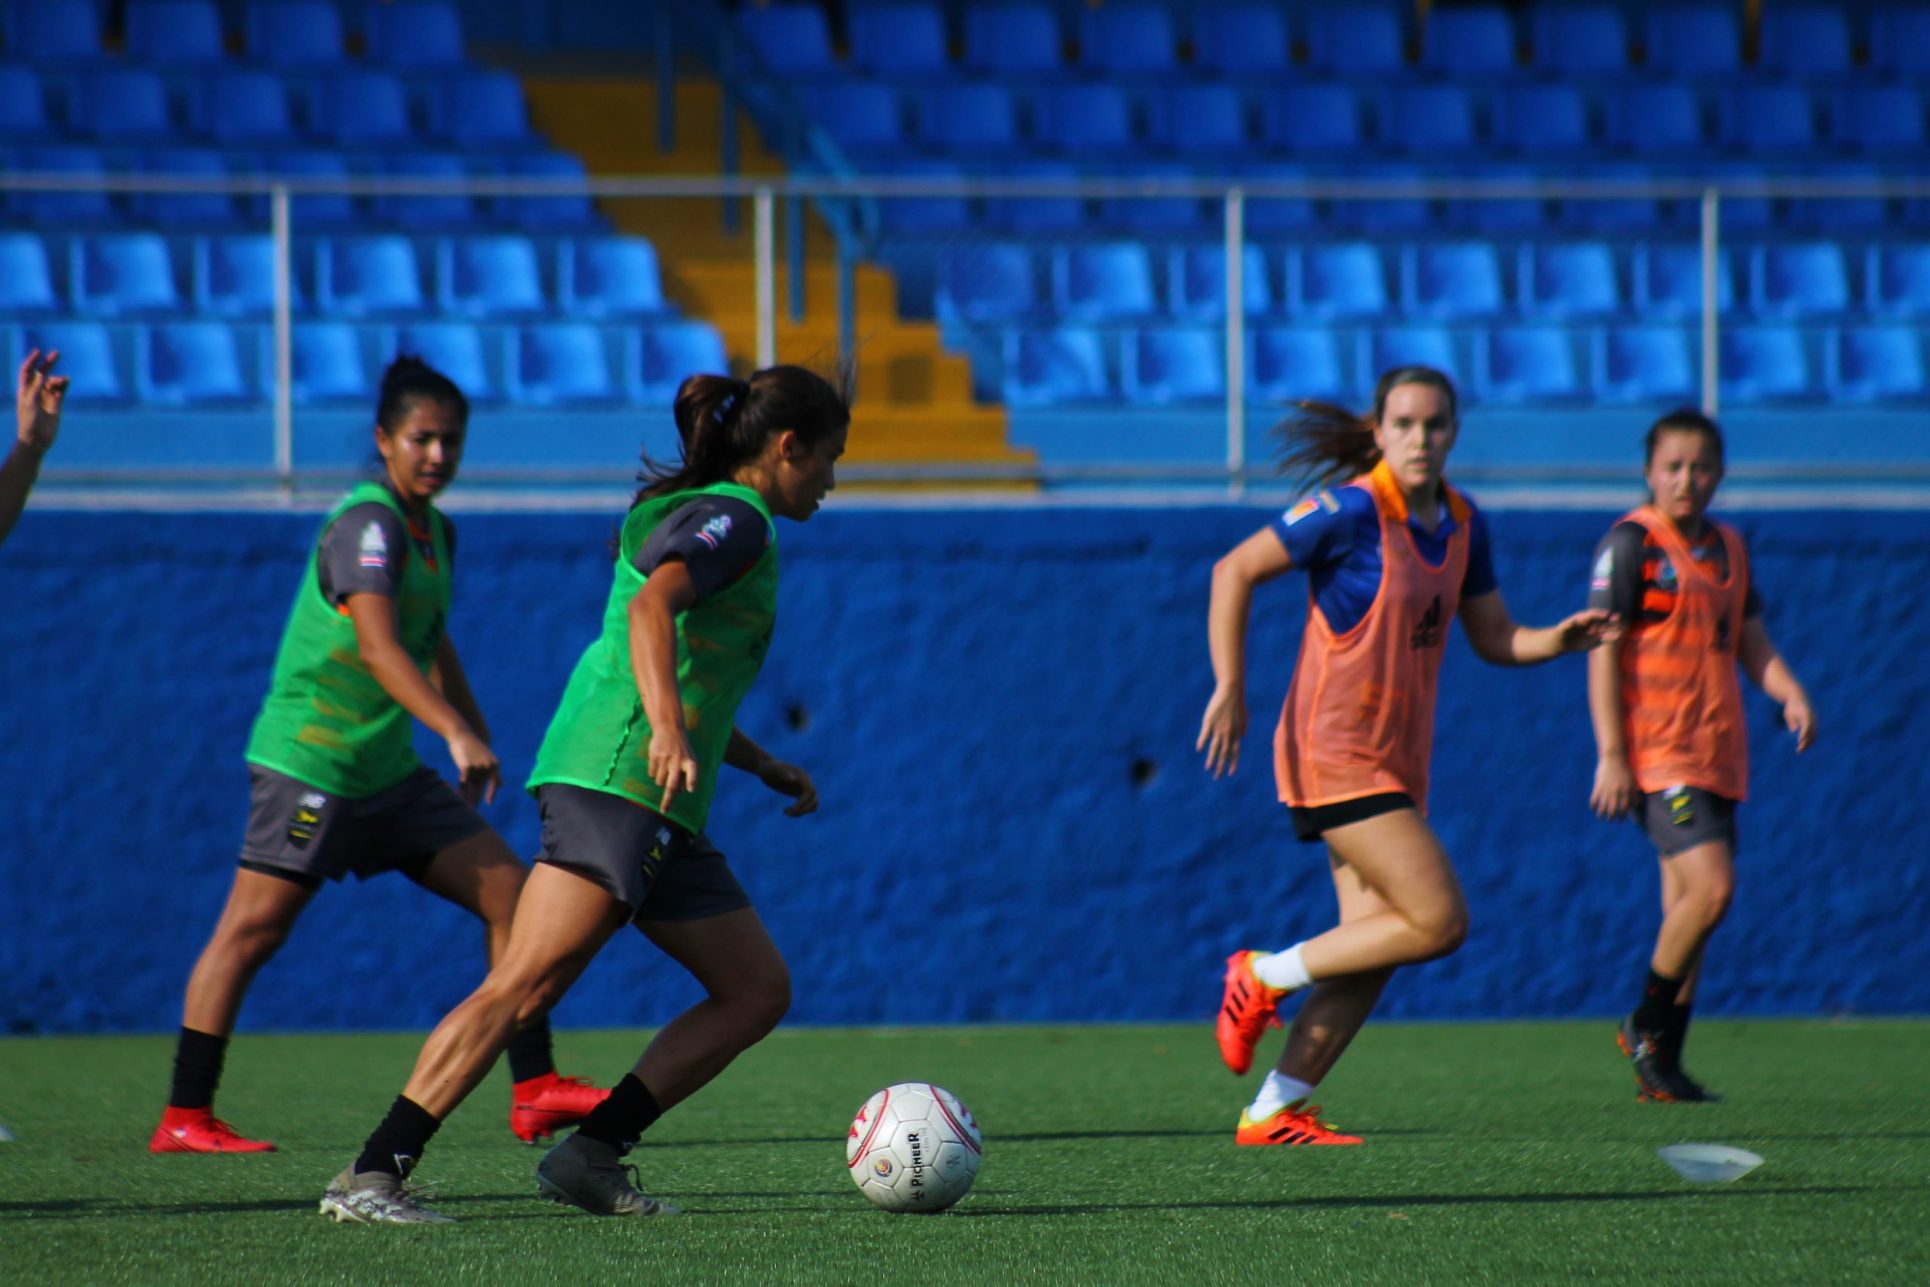 Las jugadoras del equipo Dimas Escazú jugarán su primer partido de la temporada estrenando estadio